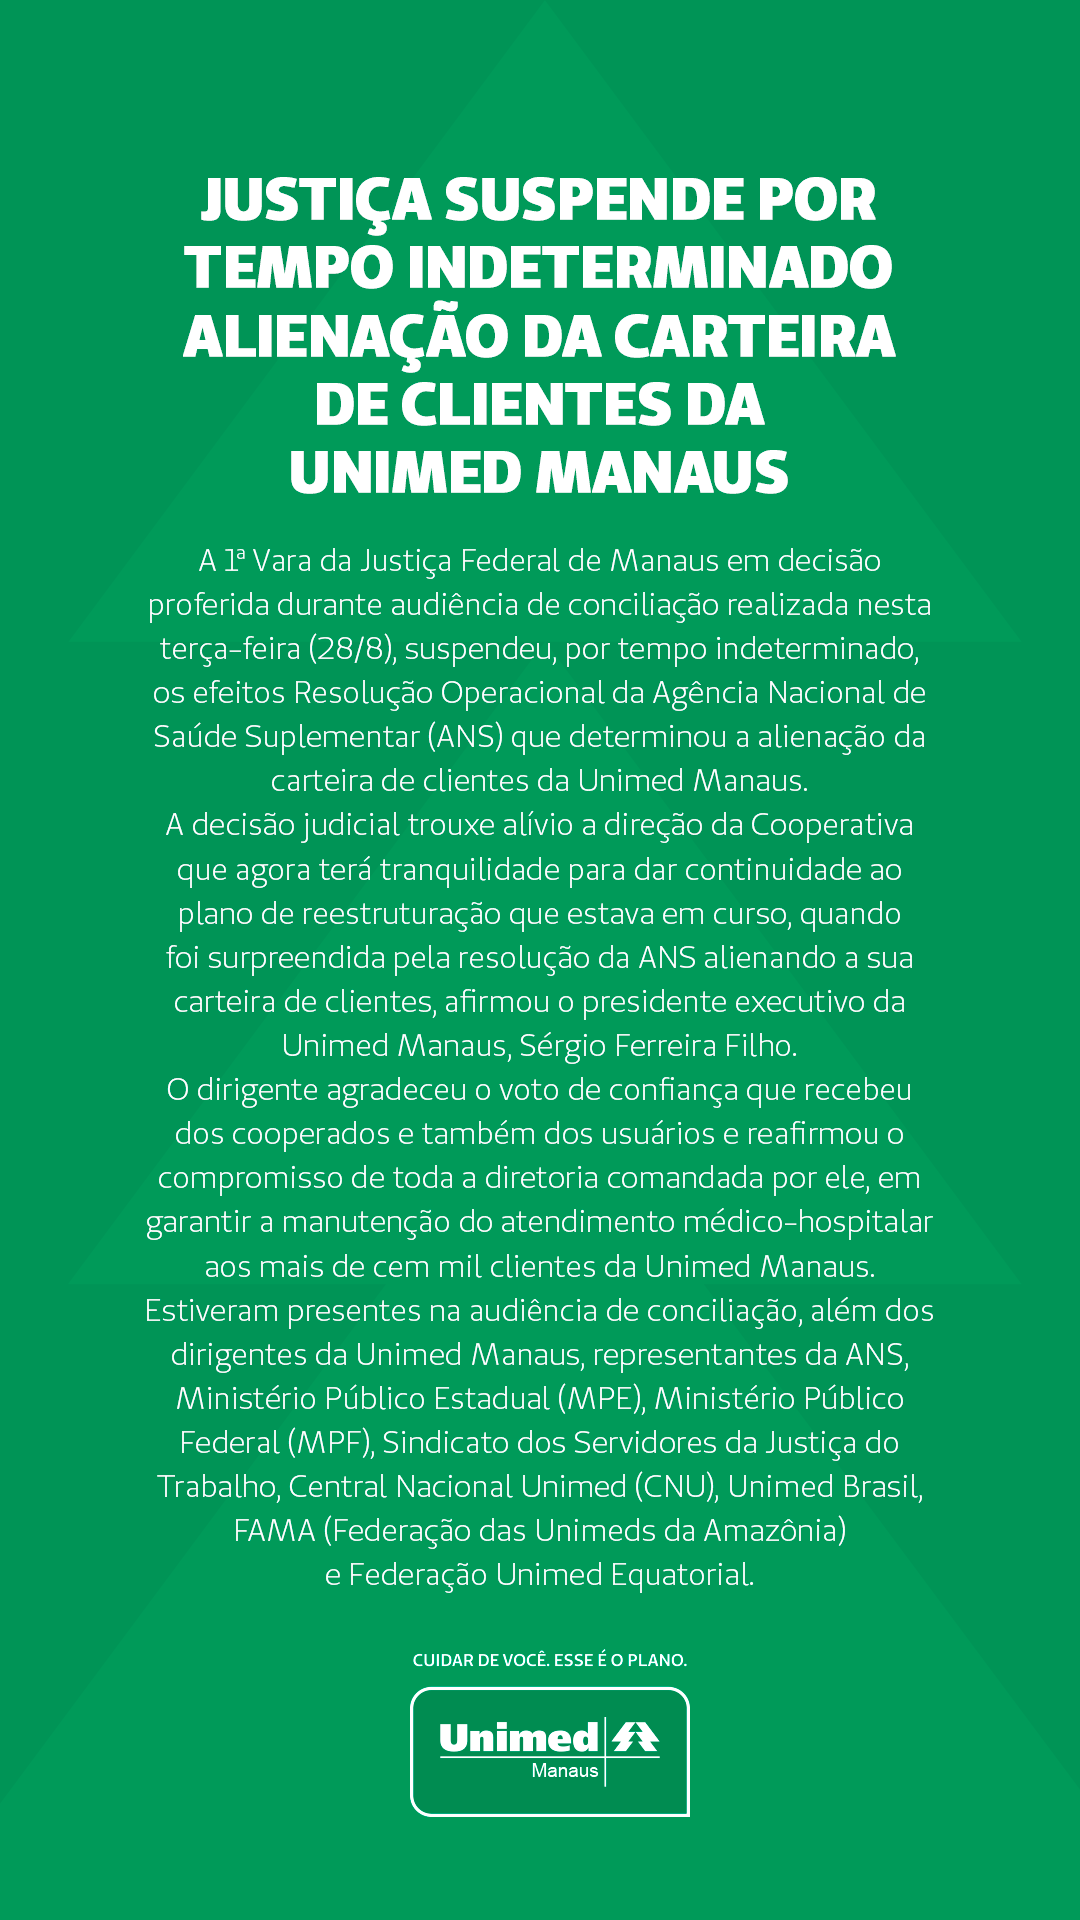 Justica suspende alienação da carteira - Notícias - Unimed Manaus